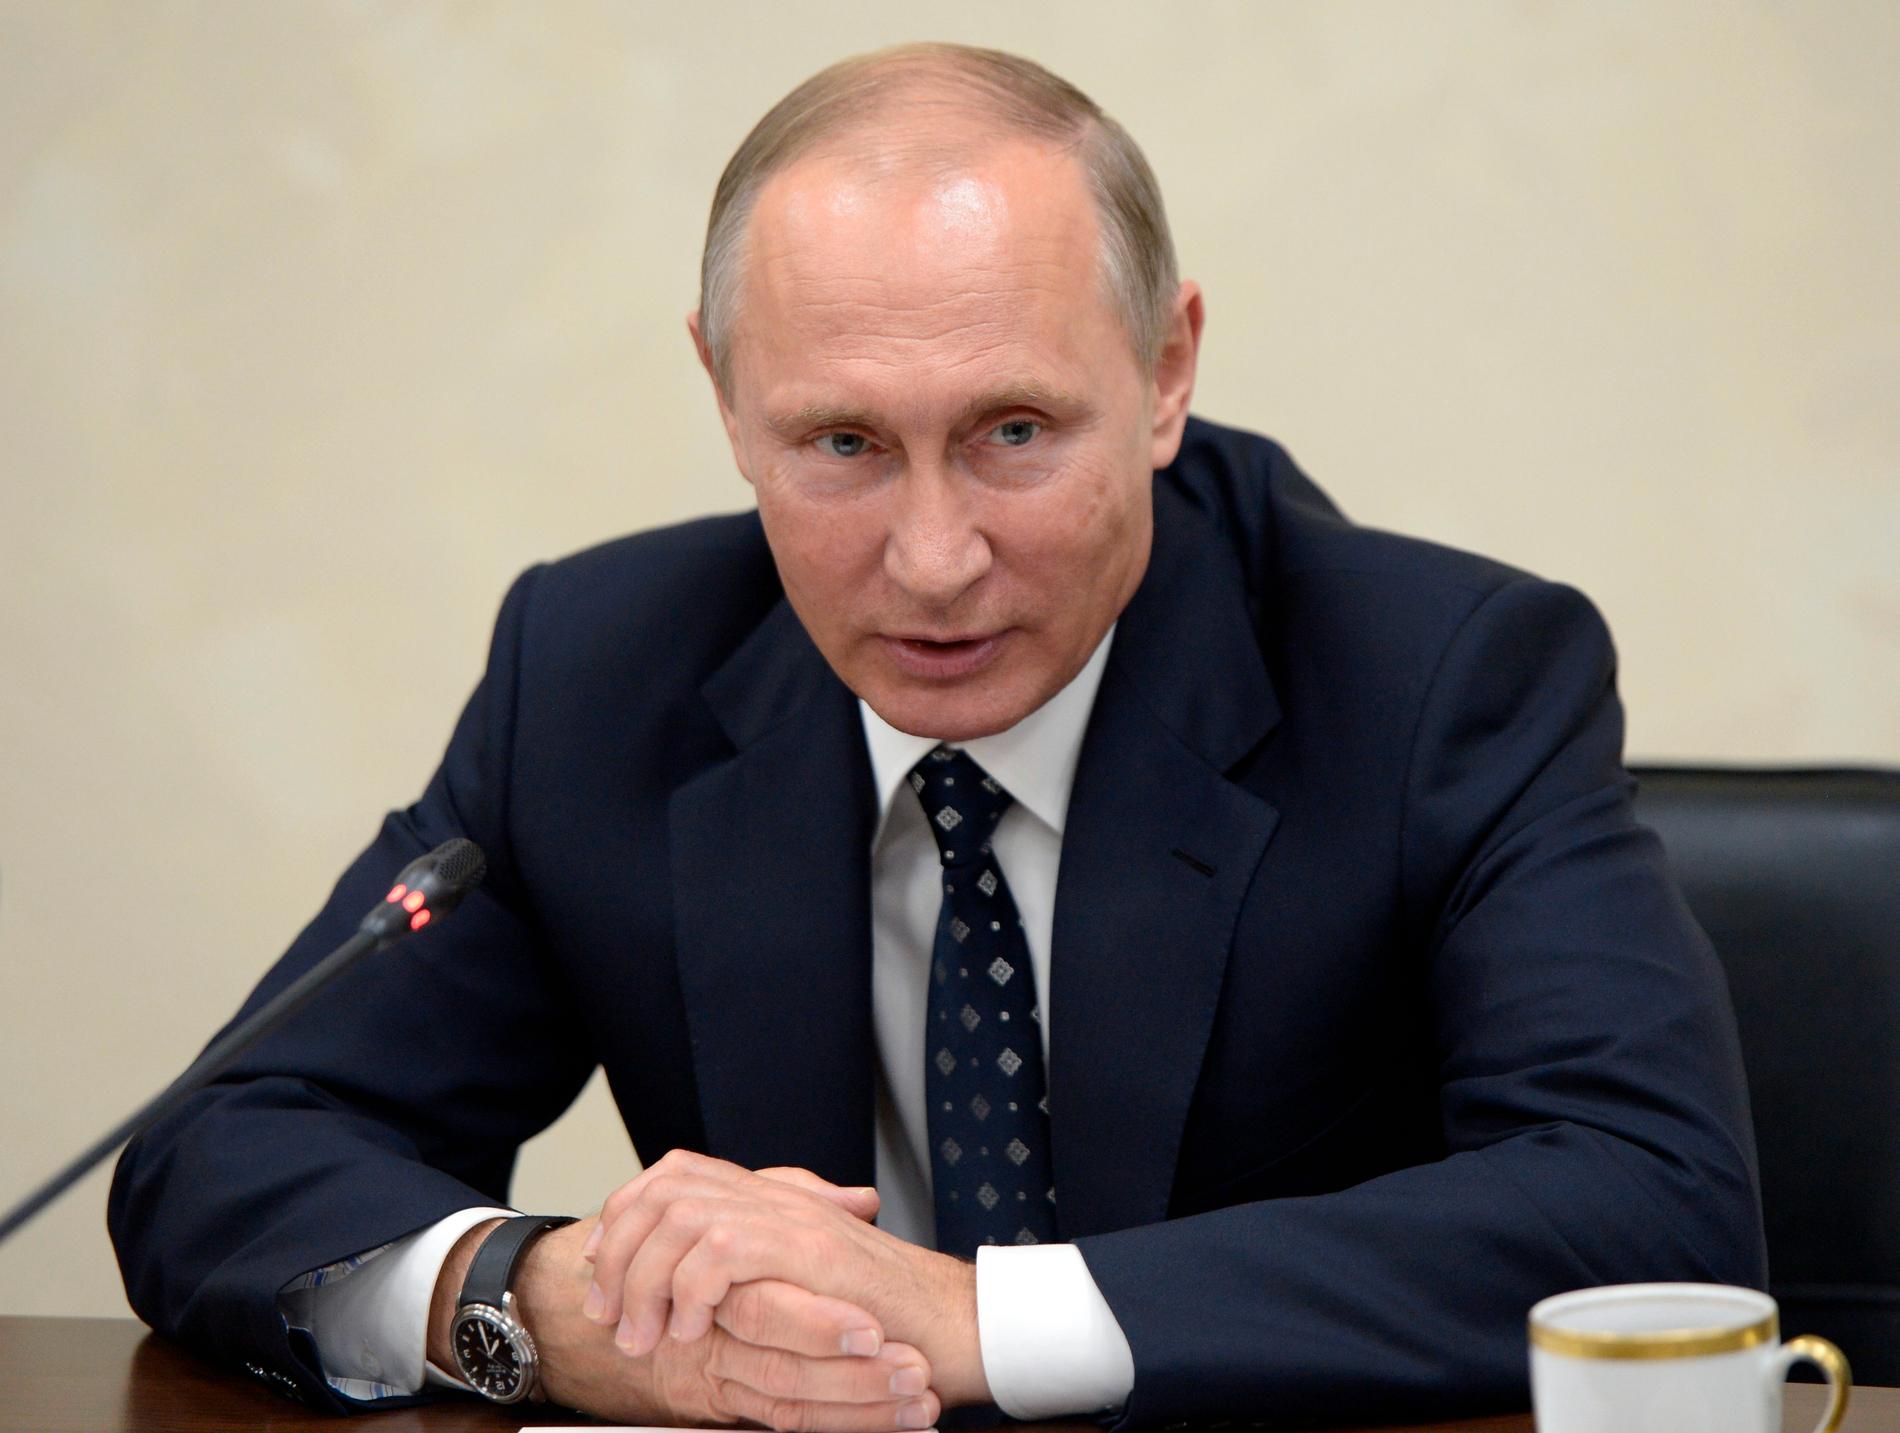 Världen undrar: Hur ska Putin reagera?